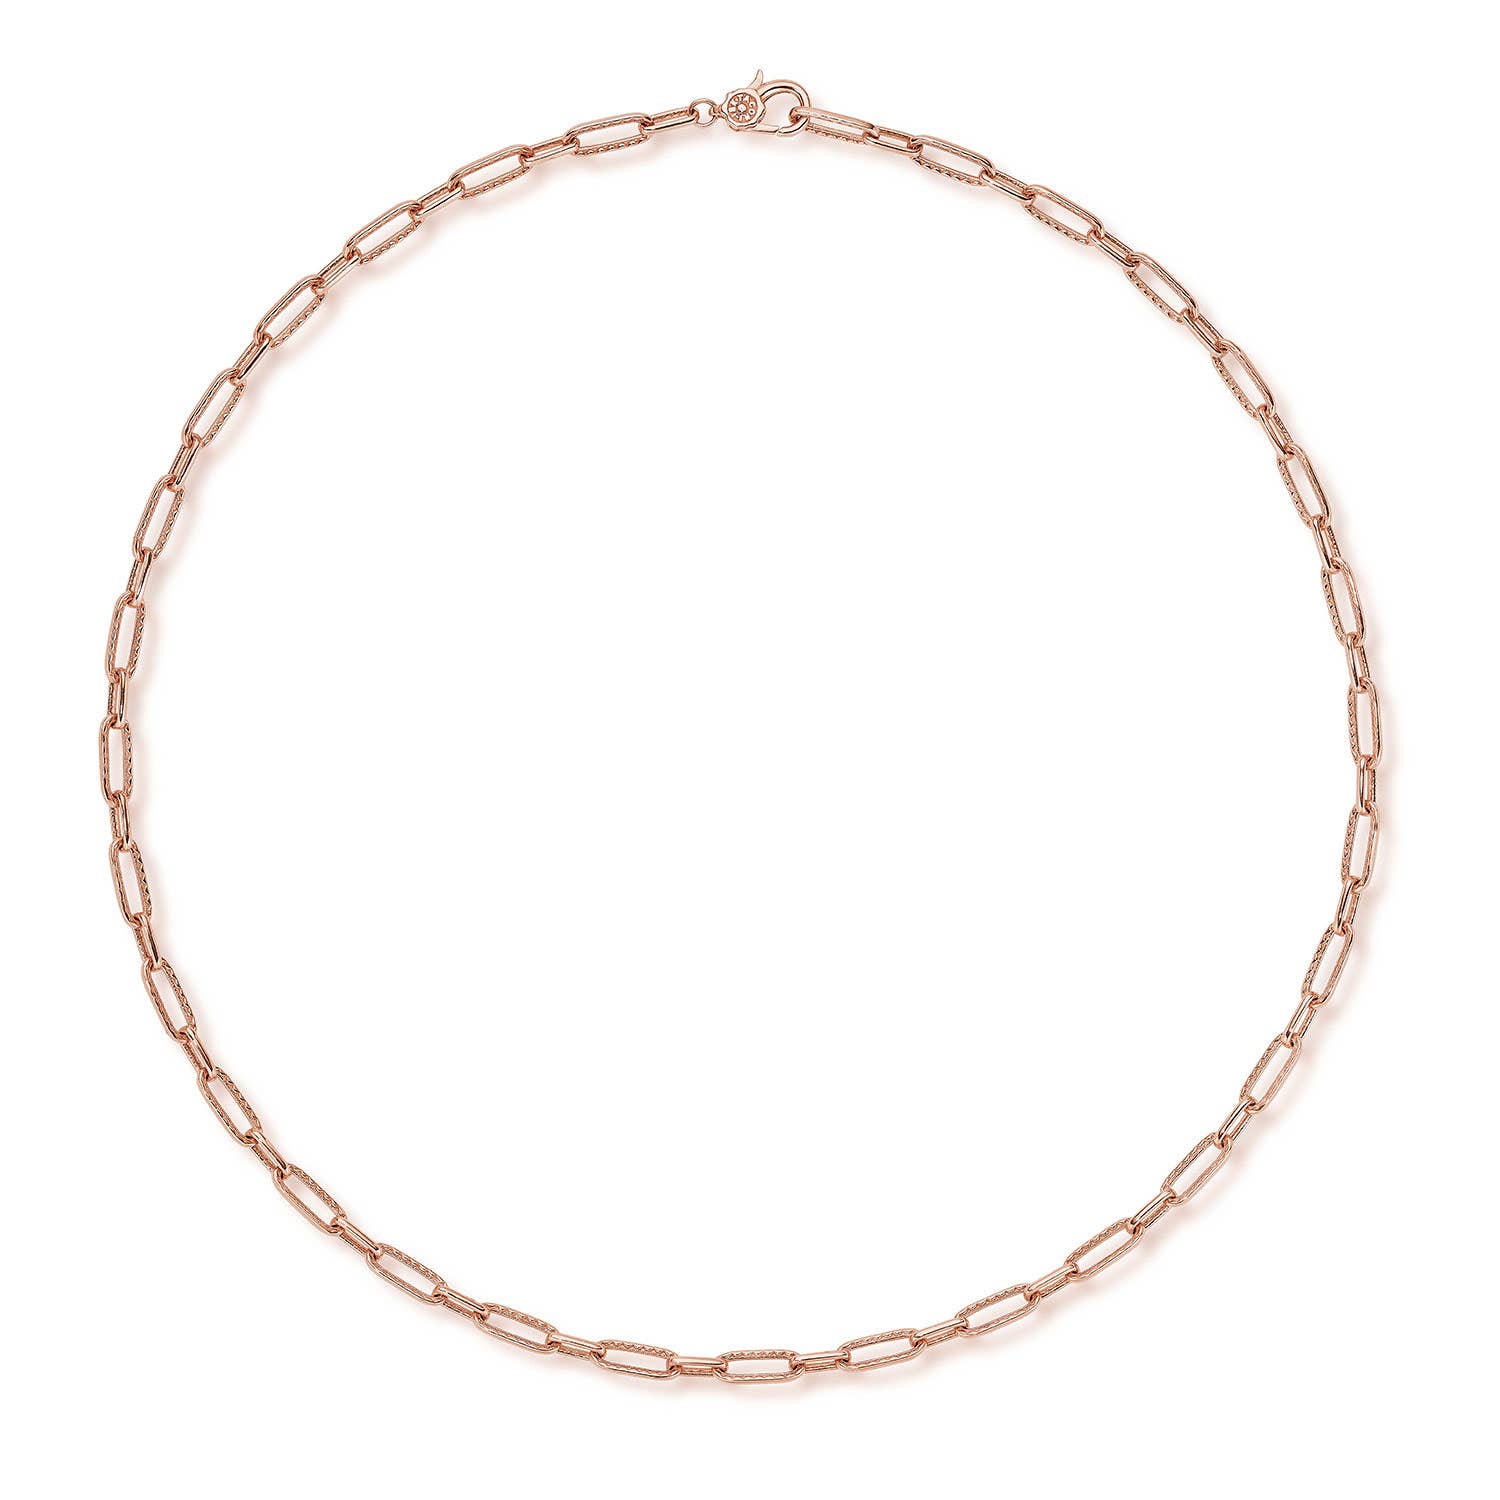 TACORI Fashion Necklaces - FN668PK18